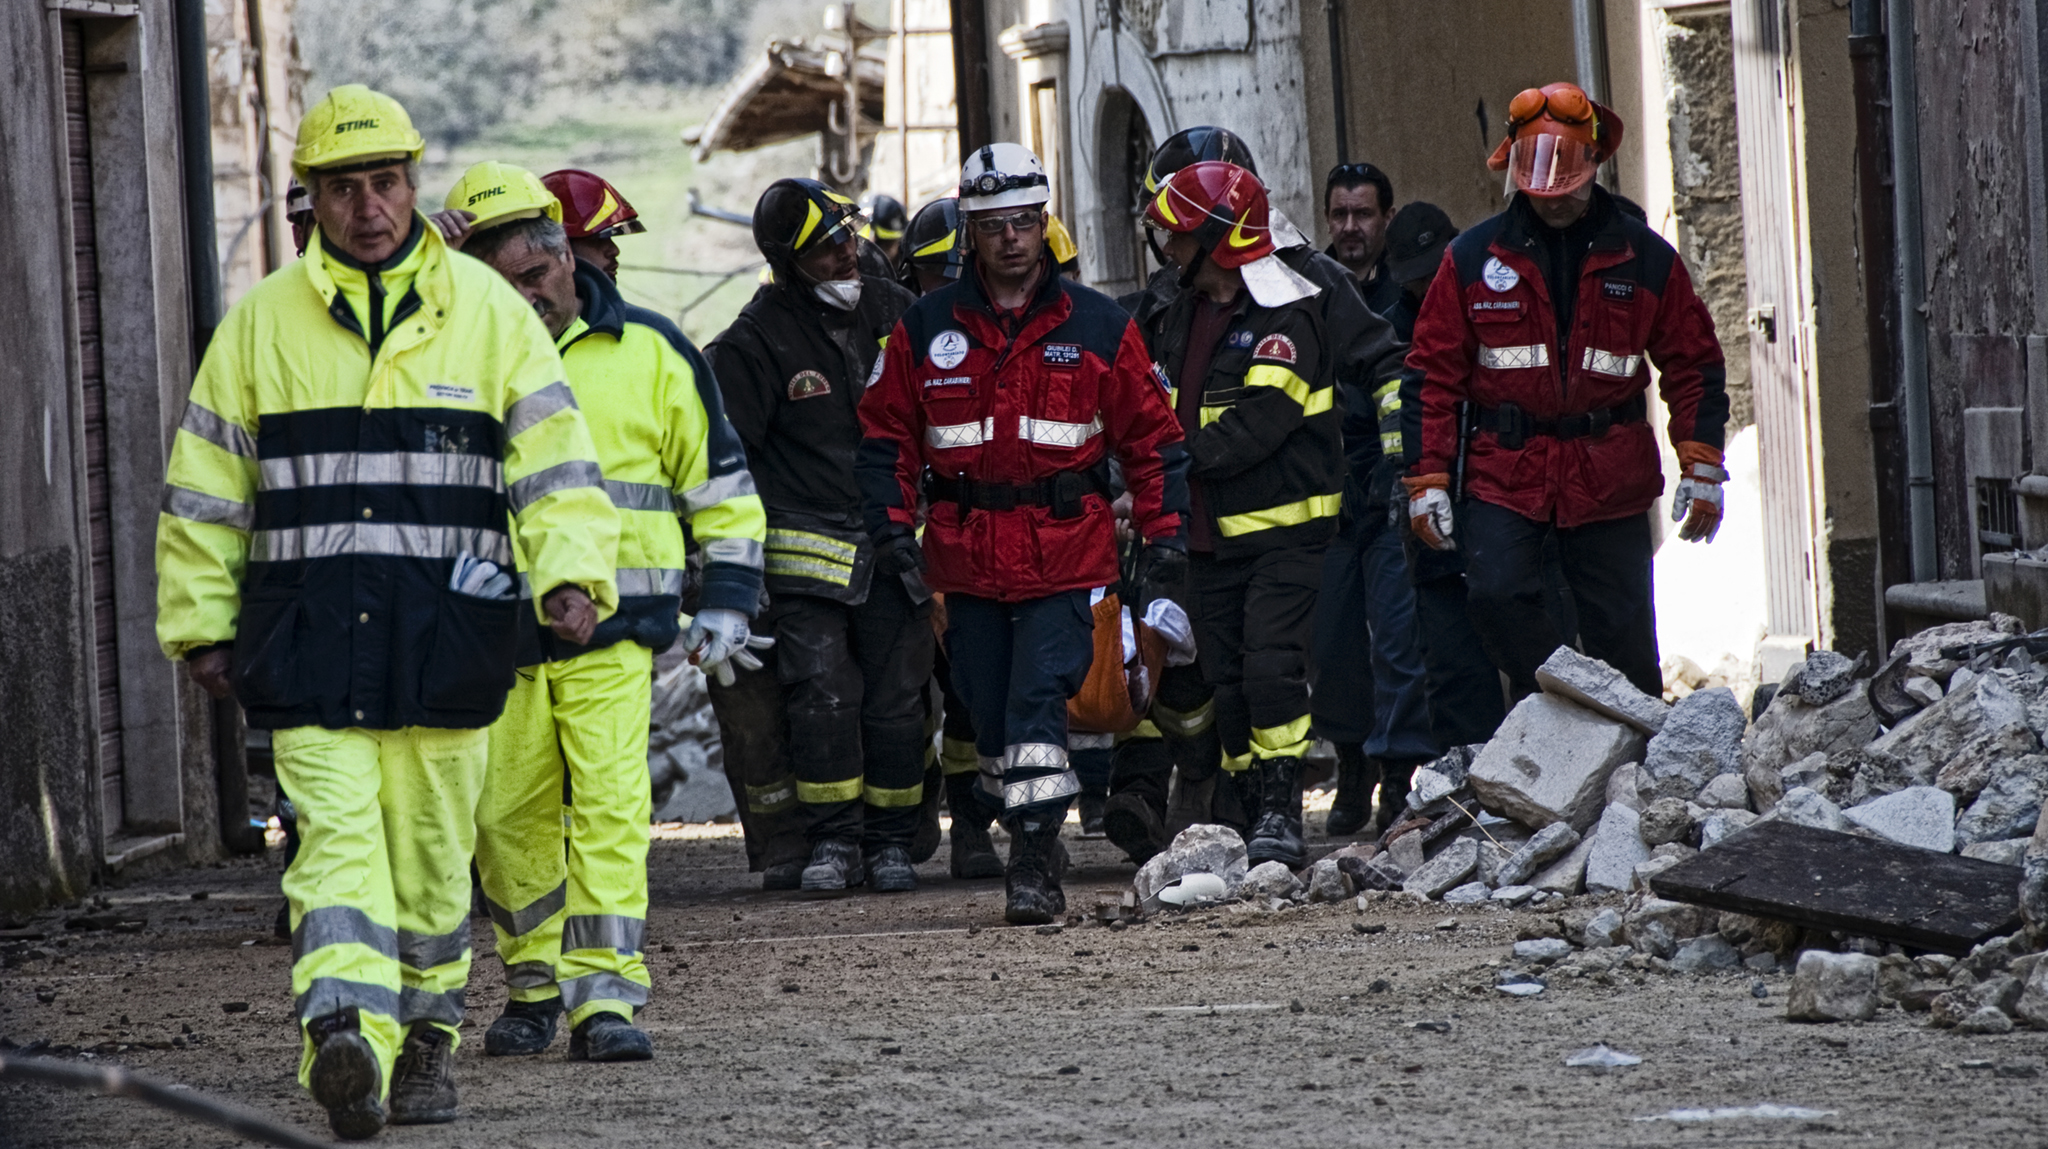 L'Aquila, 2009 - Attività di ricerca e soccorso delle strutture operative in seguito al terremoto del 6 aprile 2009 